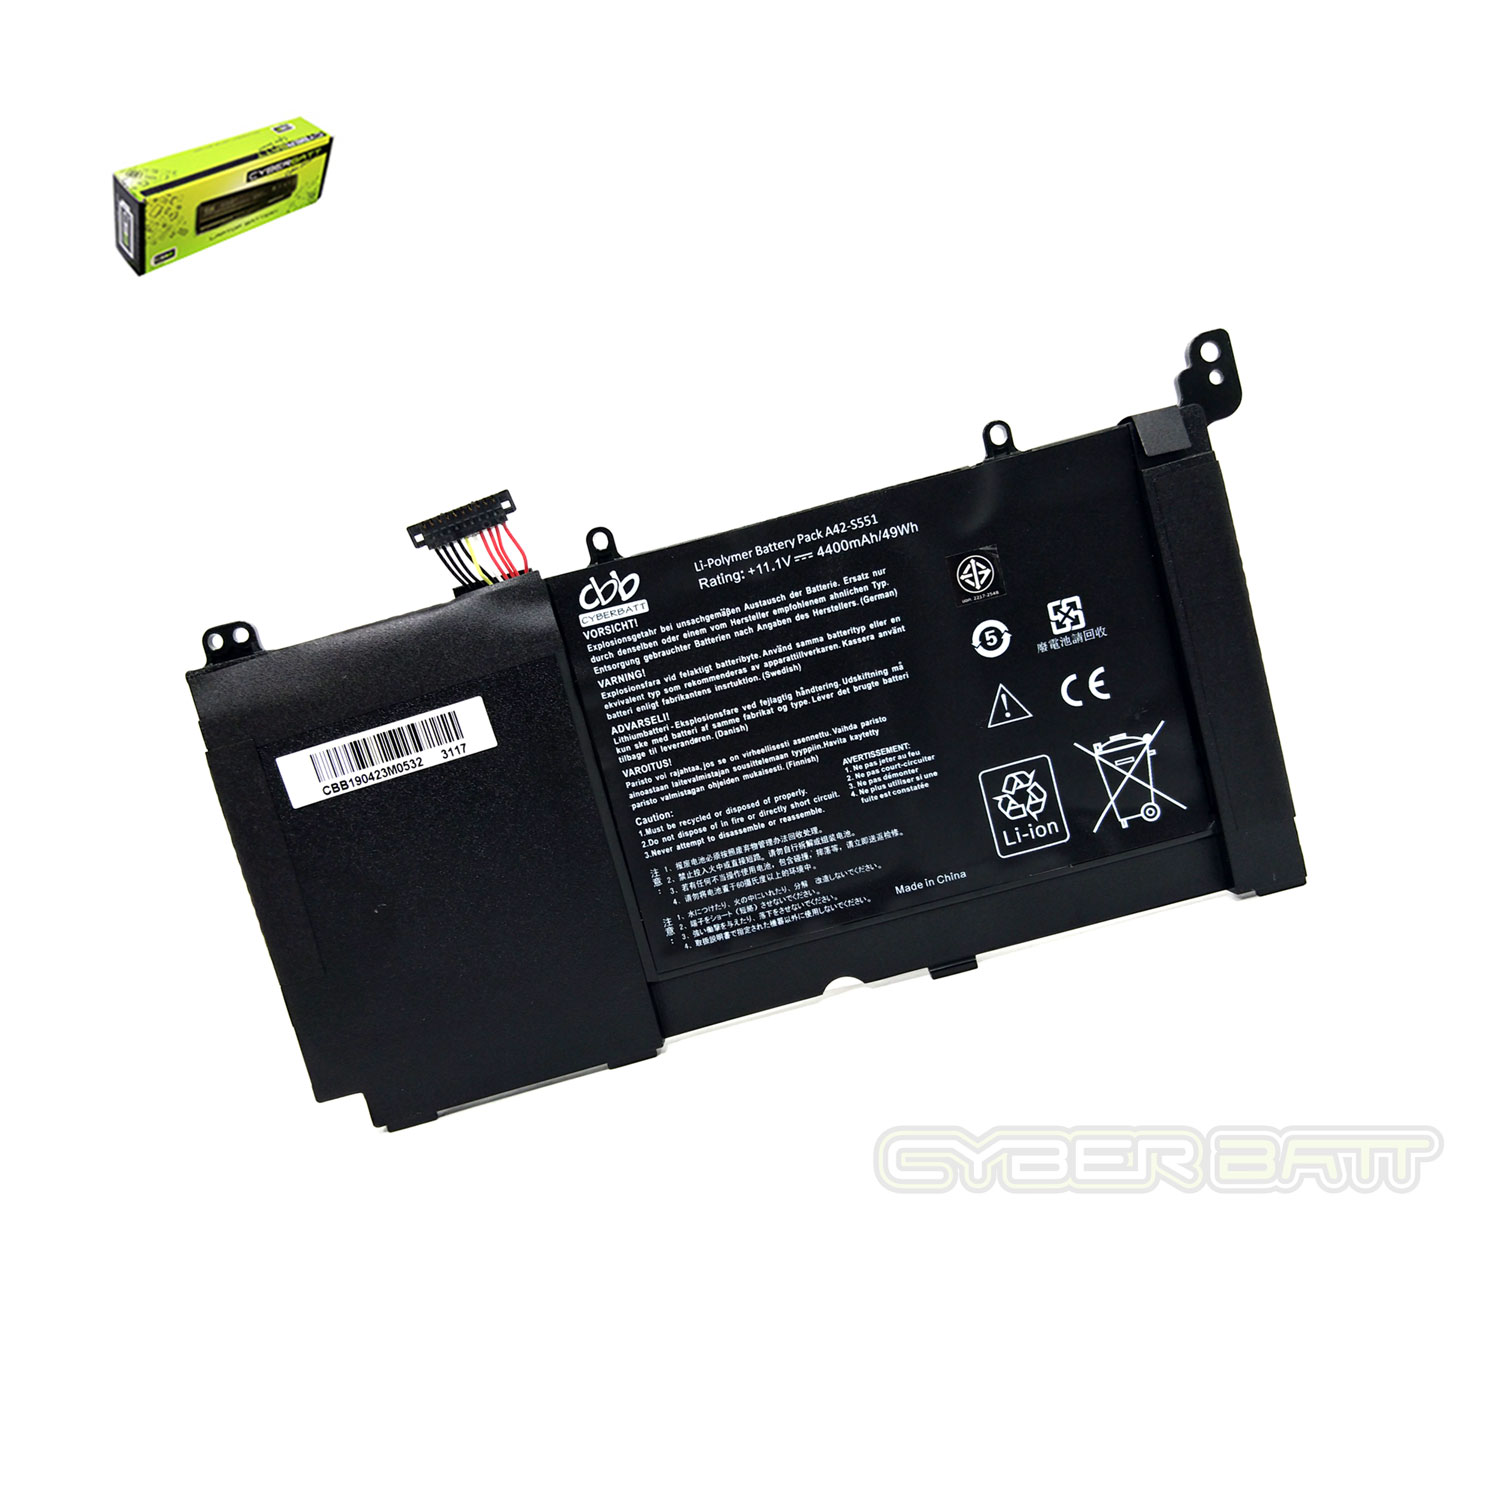 Battery Asus vivobook S551 R553L B3INI336 : 11.1V-48Wh Black (CBB)